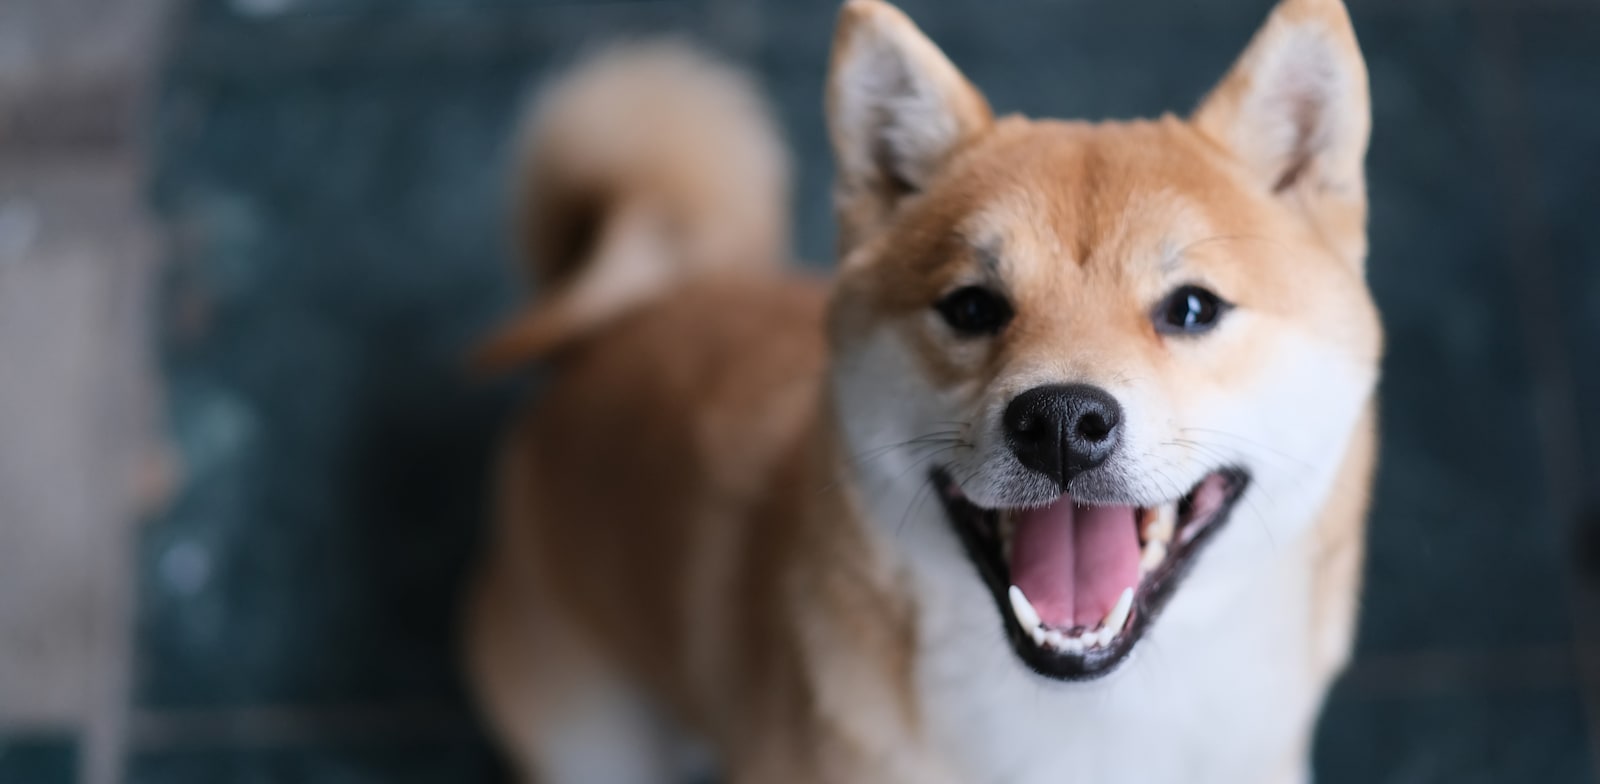 המטבע שקרוי על שם גזע הכלבים שיבה אינו הגיע לשווי של 12 מיליארד ד' / צילום: Shutterstock, Robert Way